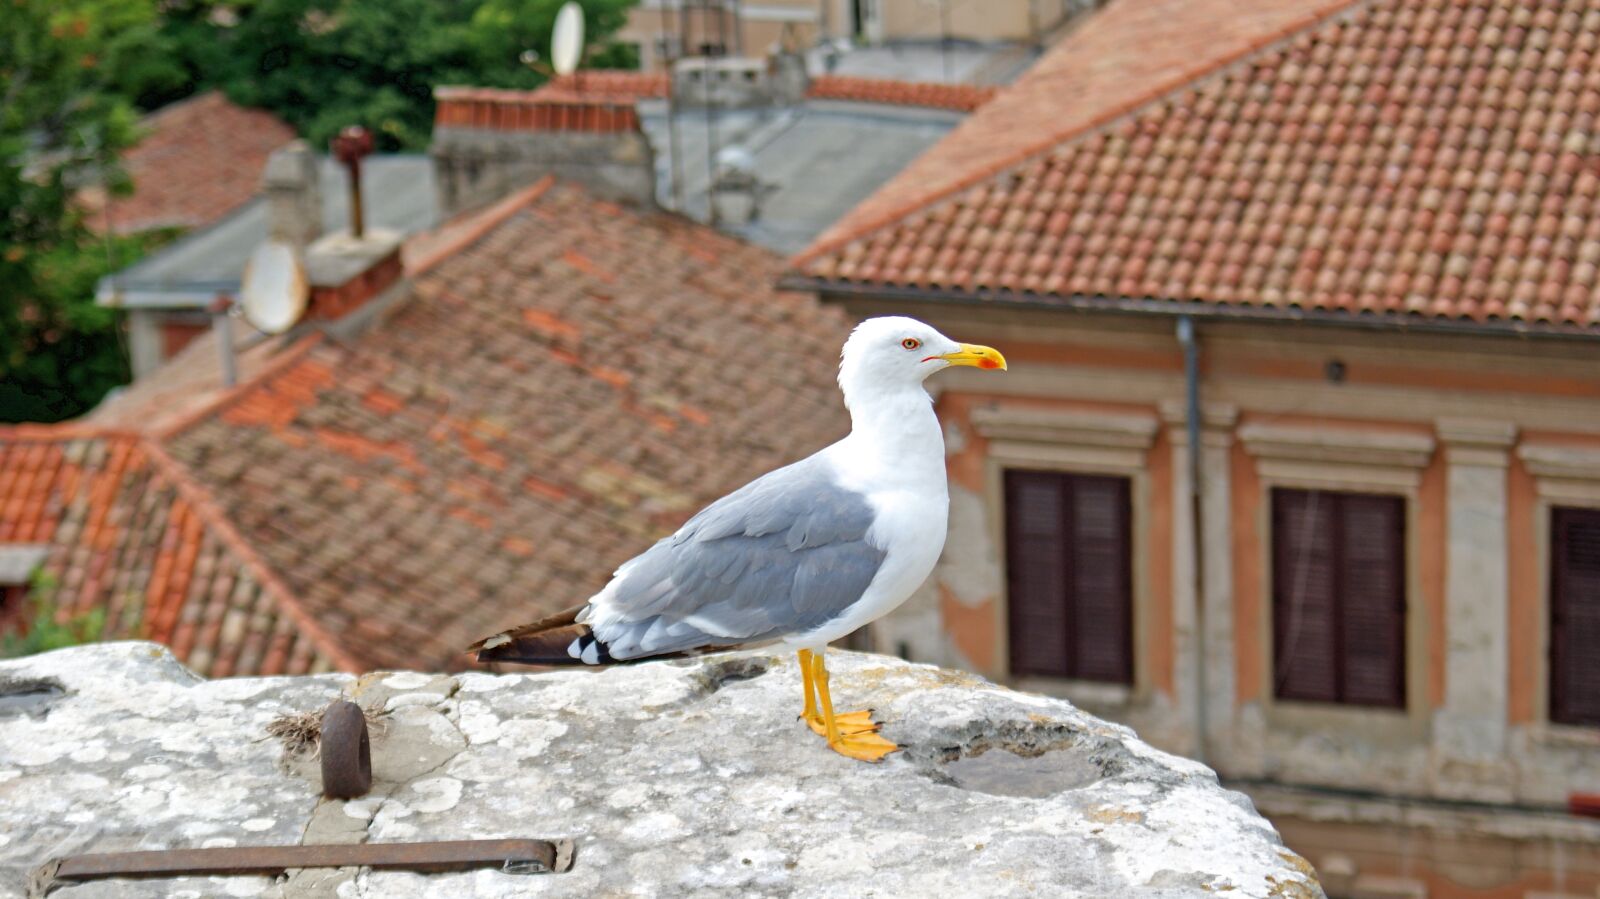 Sony Alpha DSLR-A230 sample photo. Seagull, croatia, bird photography